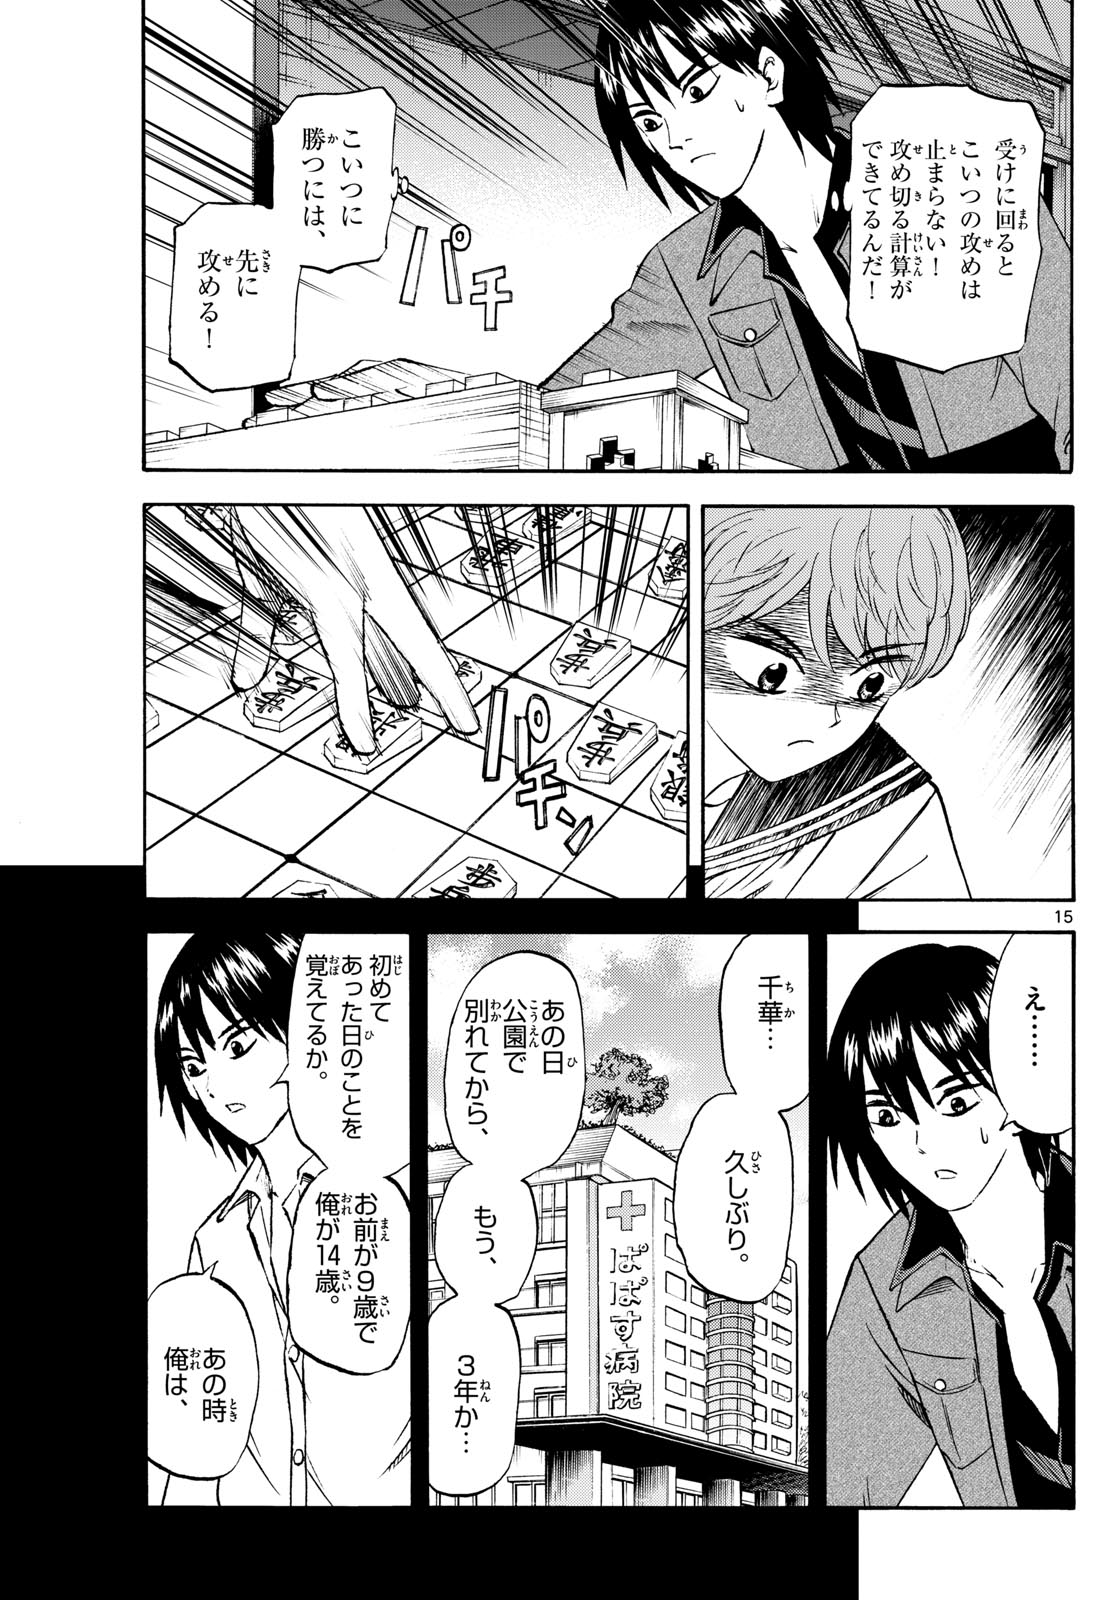 Tatsu to Ichigo - Chapter 193 - Page 15